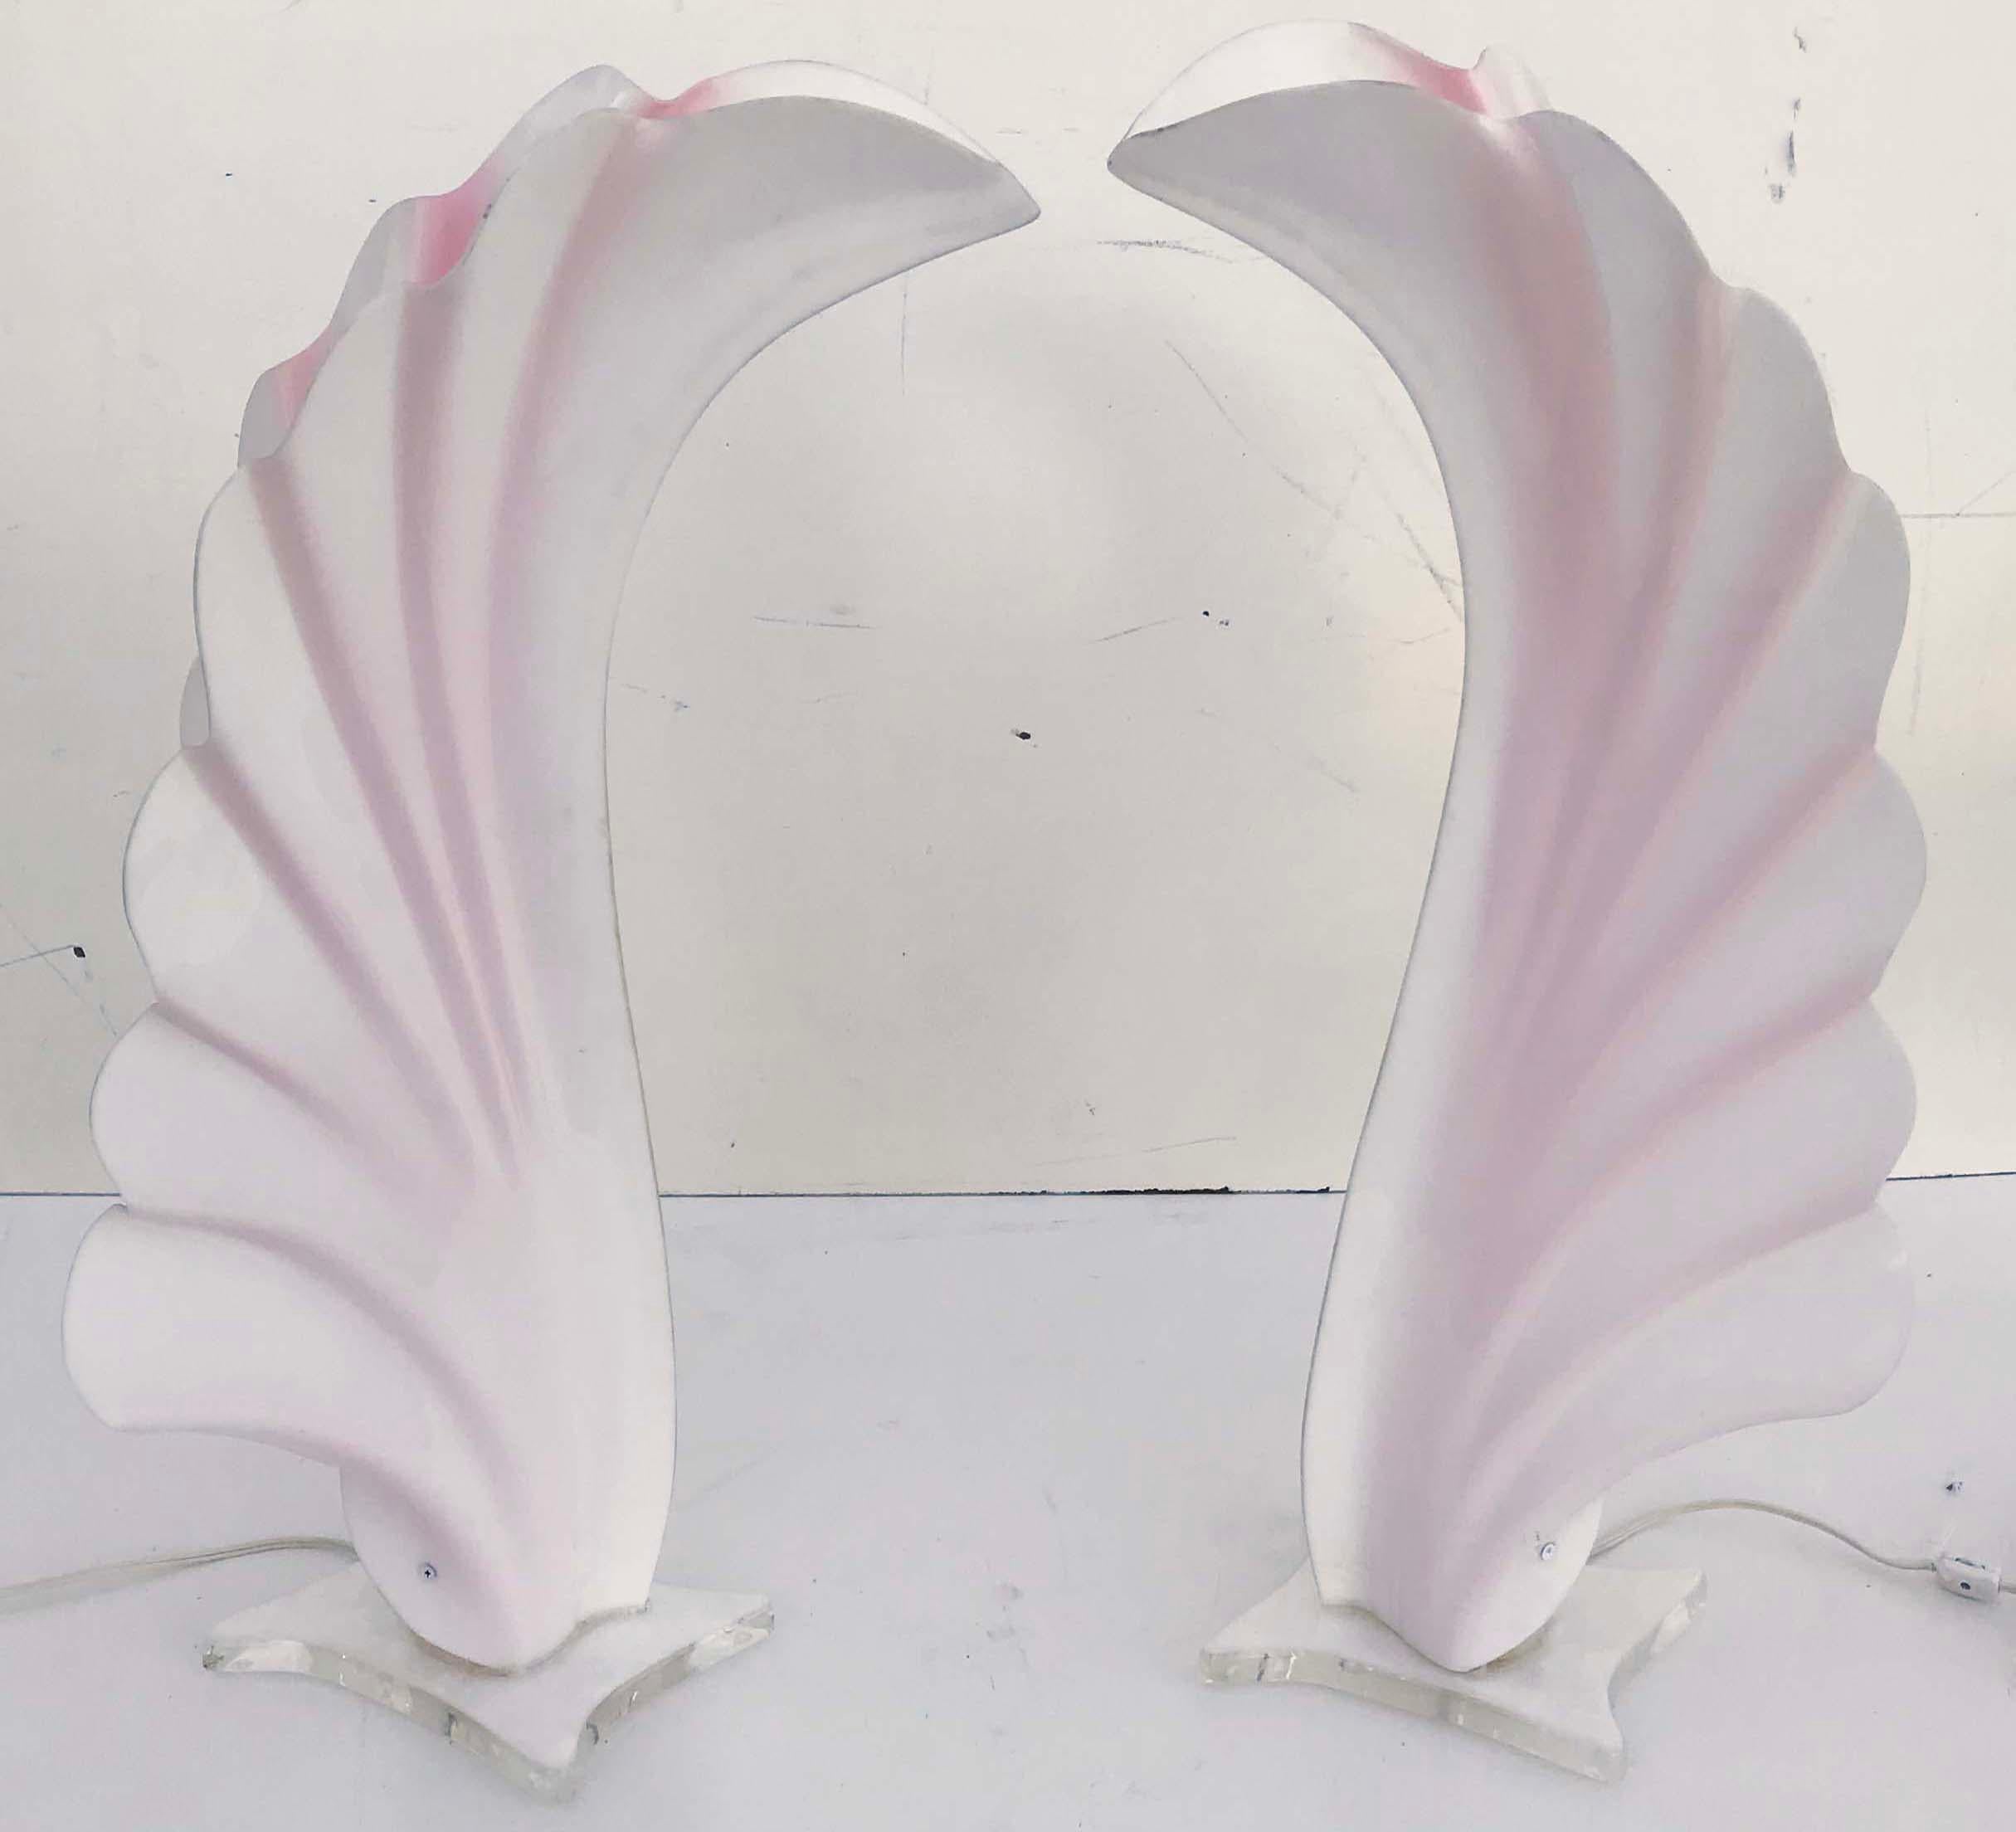 Superbe paire de lampes de table monumentales en acrylique rose et blanc.
Condition vintage originale
1 lampe, ampoule de 60 watts max
D'une propriété de Miami Beach
Mesures : Base : 10